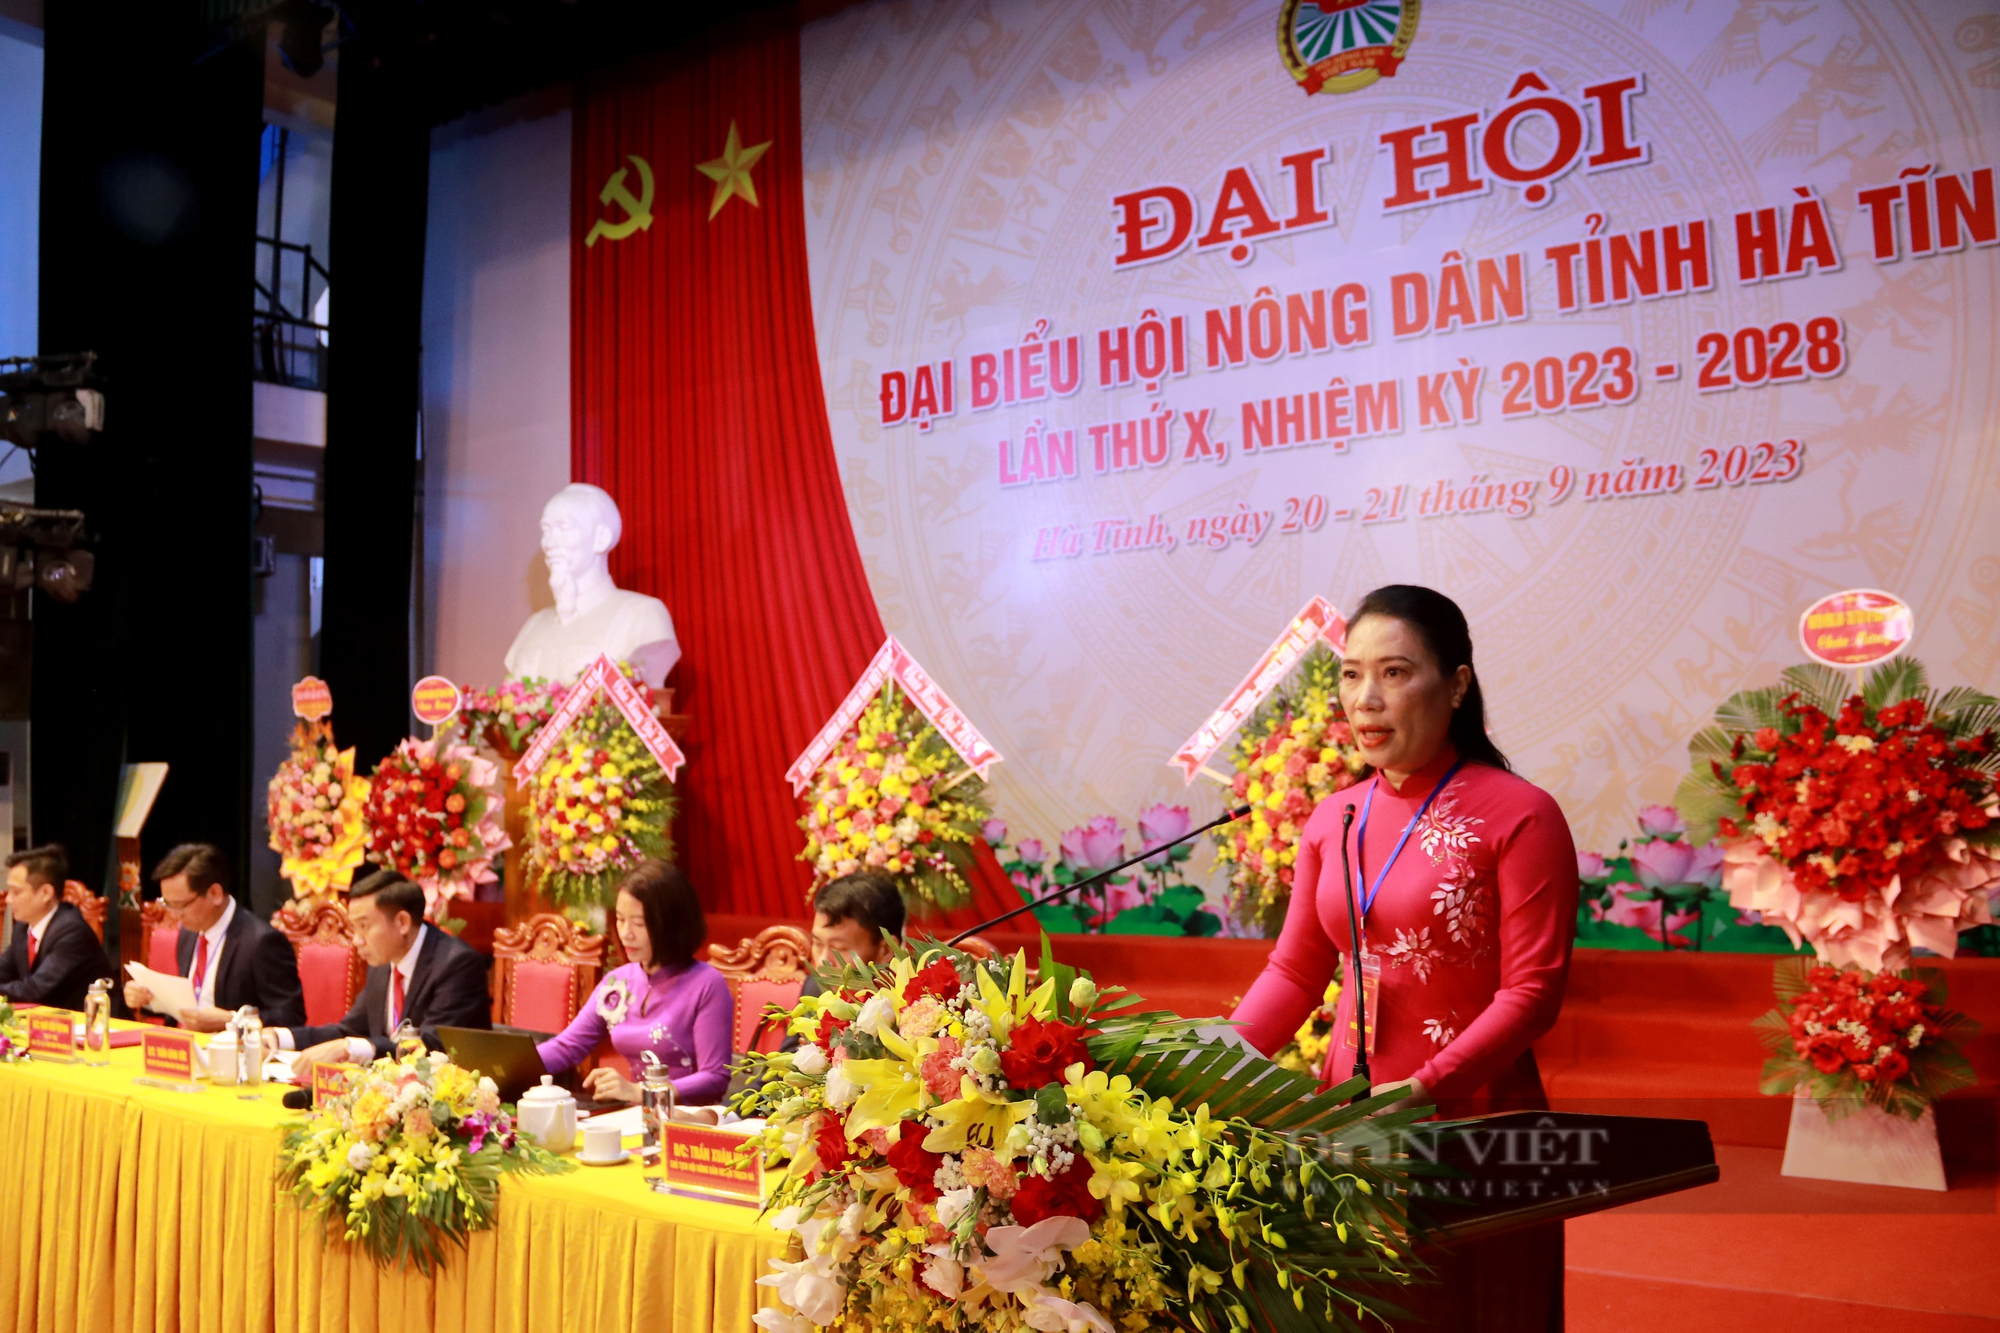 Ông Ngô Văn Huỳnh được bầu tái giữ chức Chủ tịch Hội Nông dân tỉnh Hà Tĩnh lần thứ X - Ảnh 5.